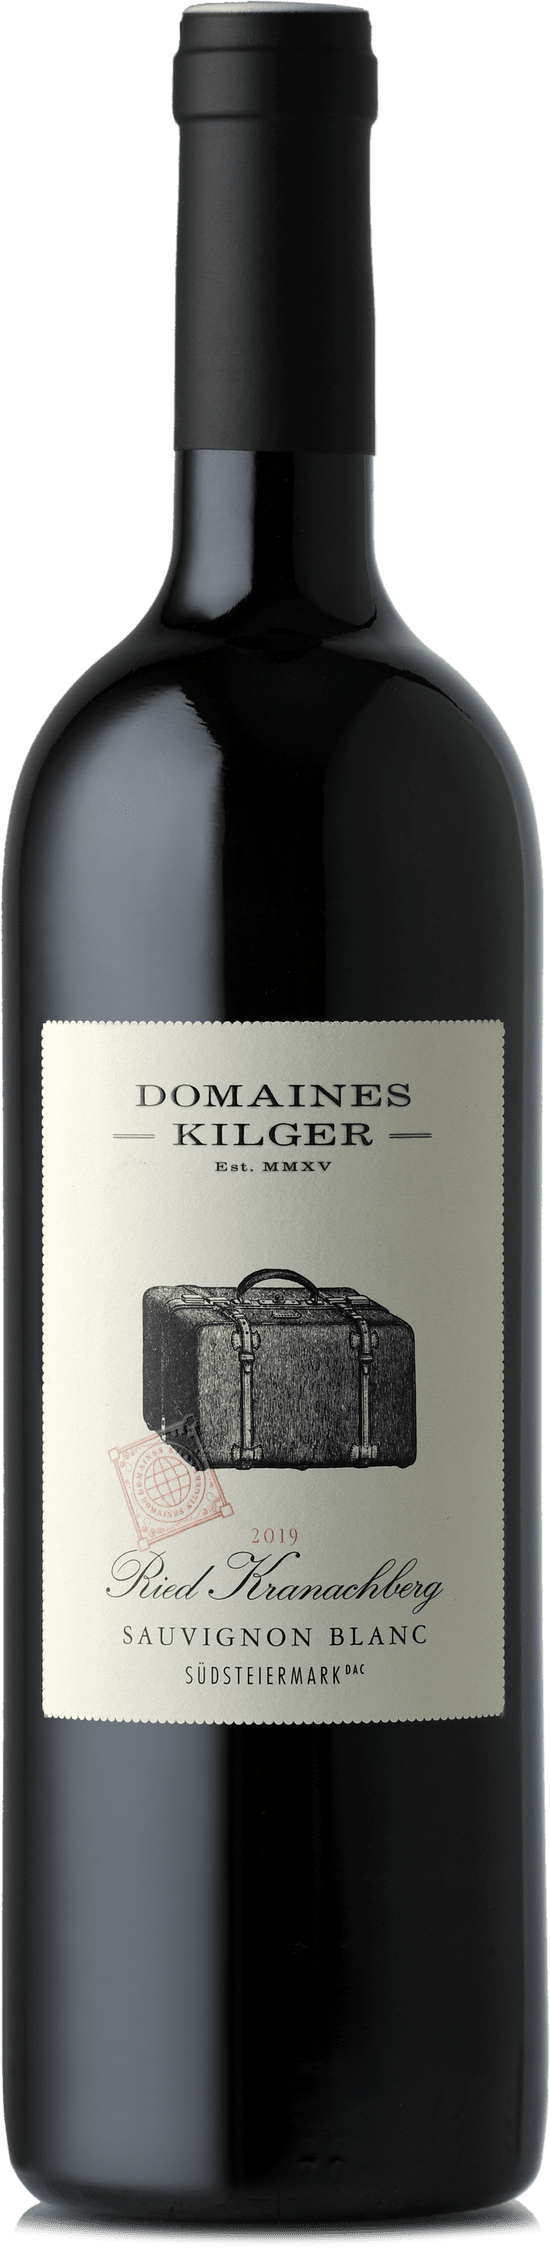 2019 Magnum Sauvignon Blanc Ried KRANACHBERG DAC